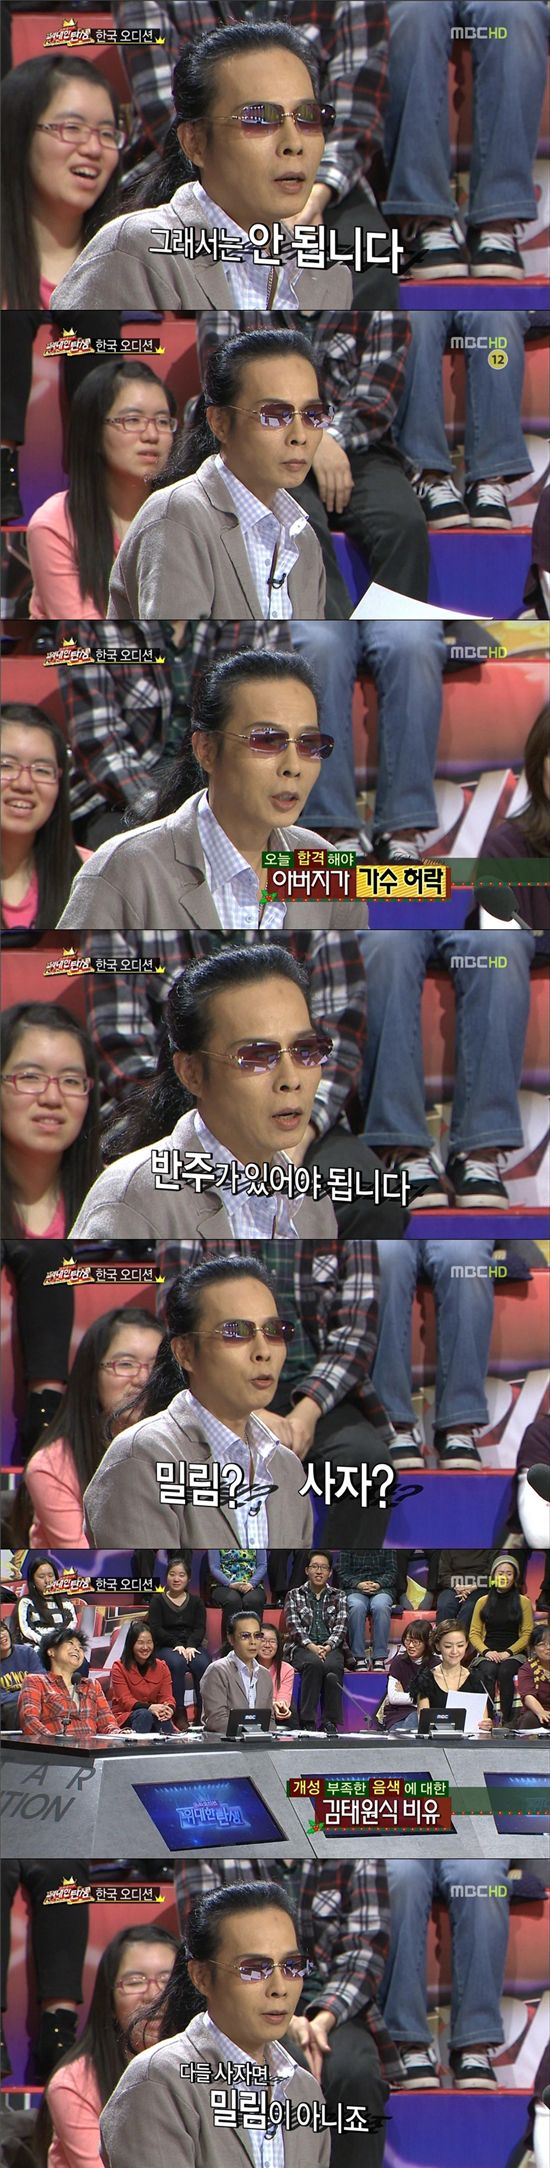 '위대한탄생' 김태원 효과? 자체최고시청률··'첫 두자리 진입'